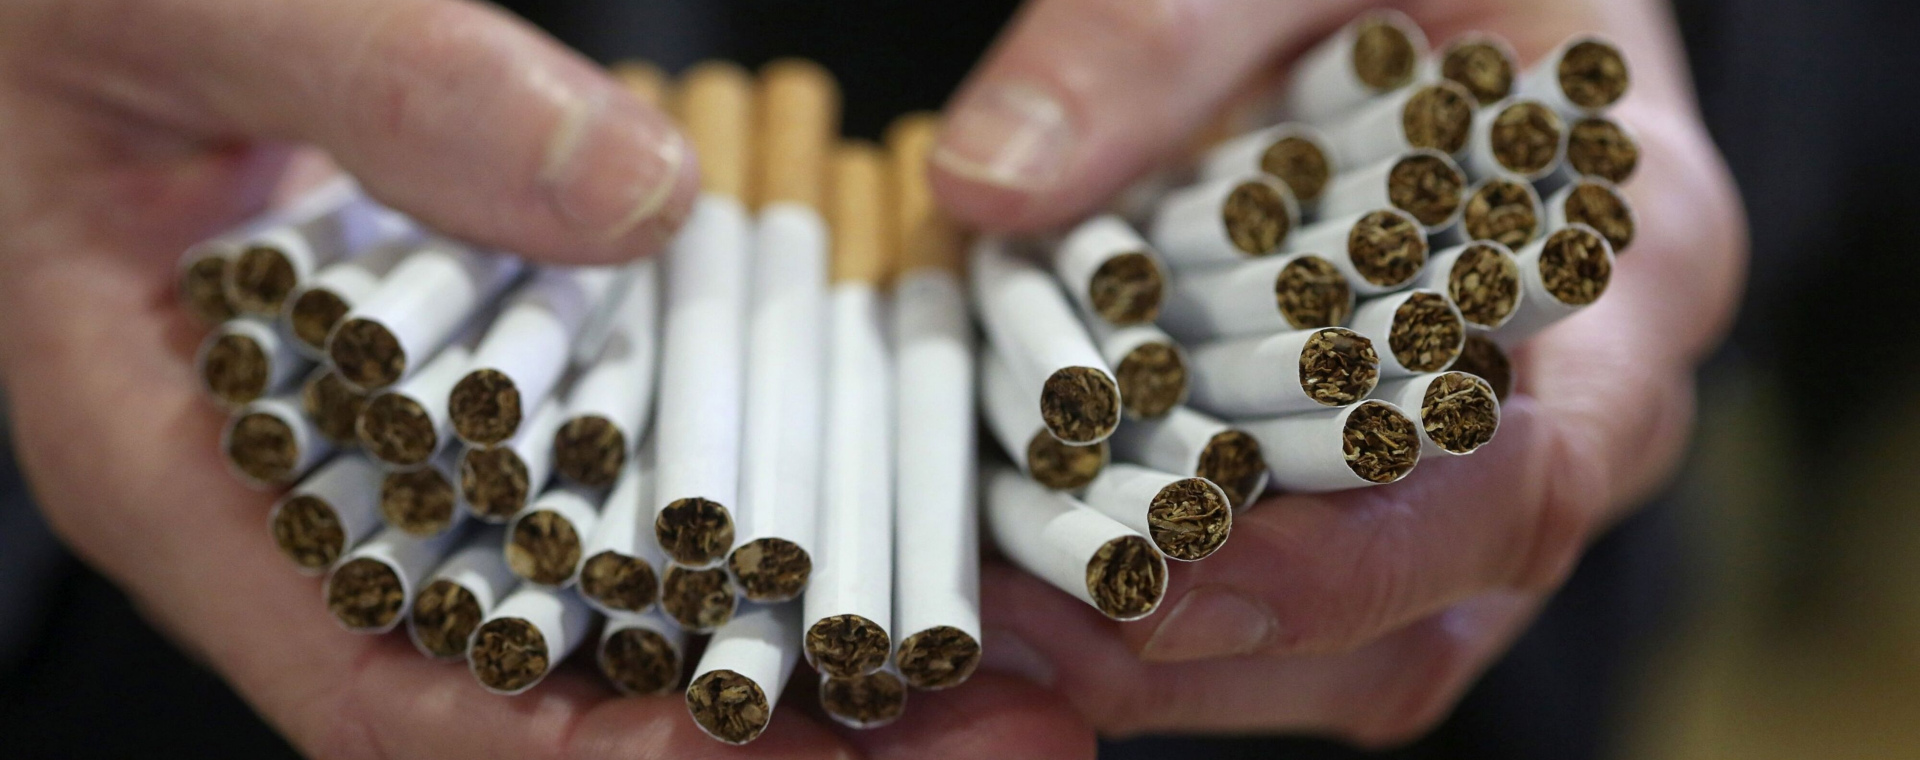  Nikotin Punya Efek Adiksi, Ini Cara Tekan Kebiasaan Merokok